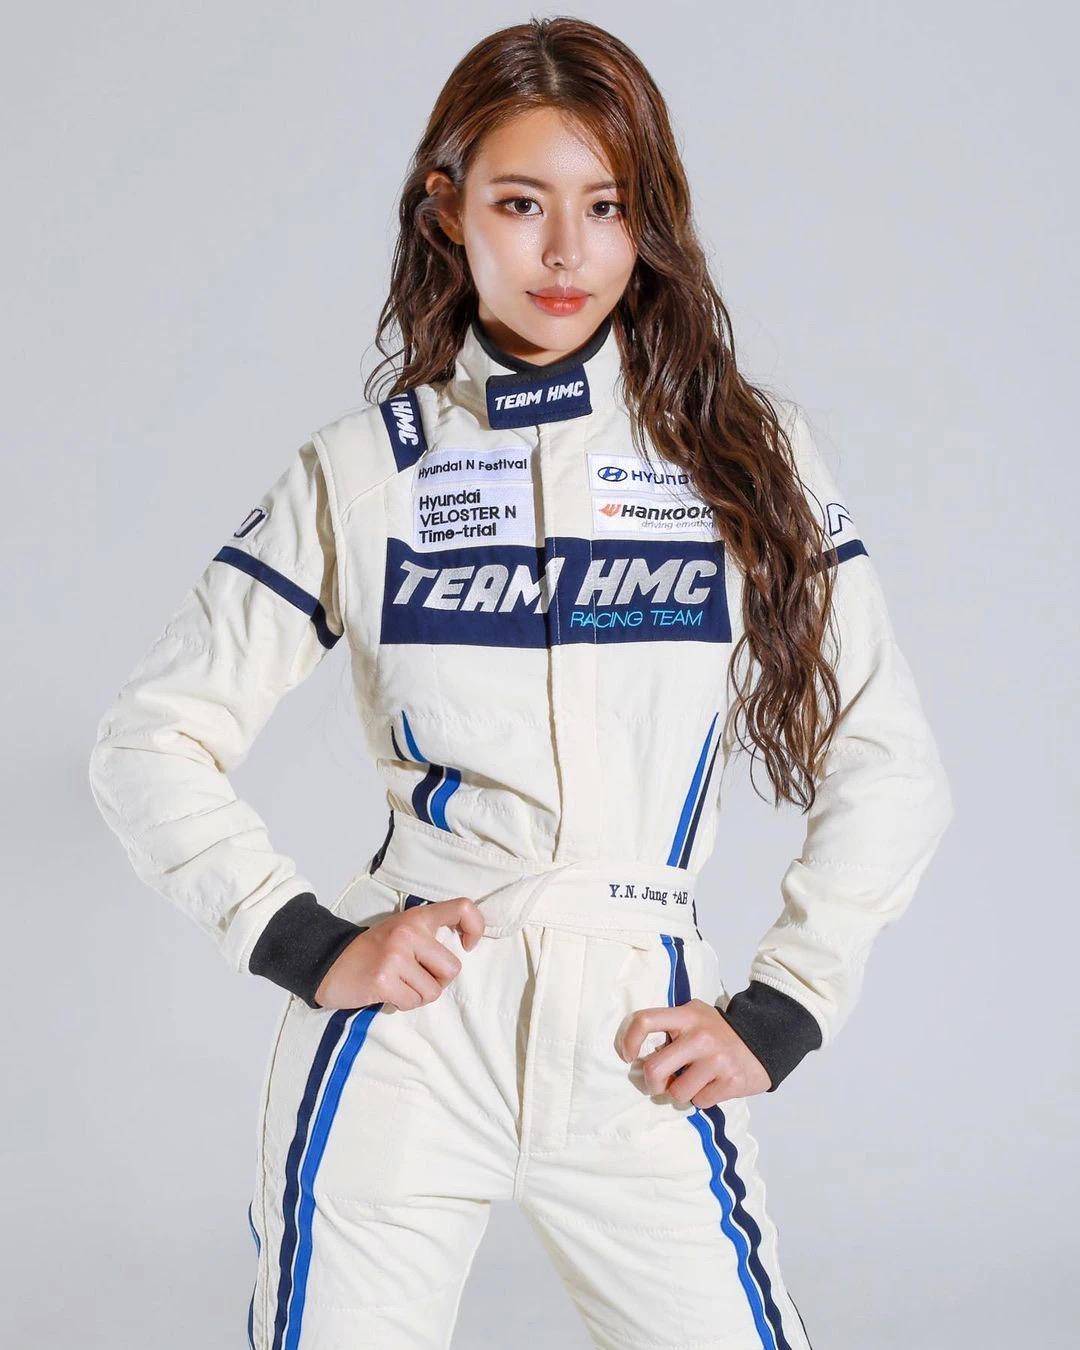 23岁韩国美女是身材出众的模特还是酷帅赛车手堪称人间尤物